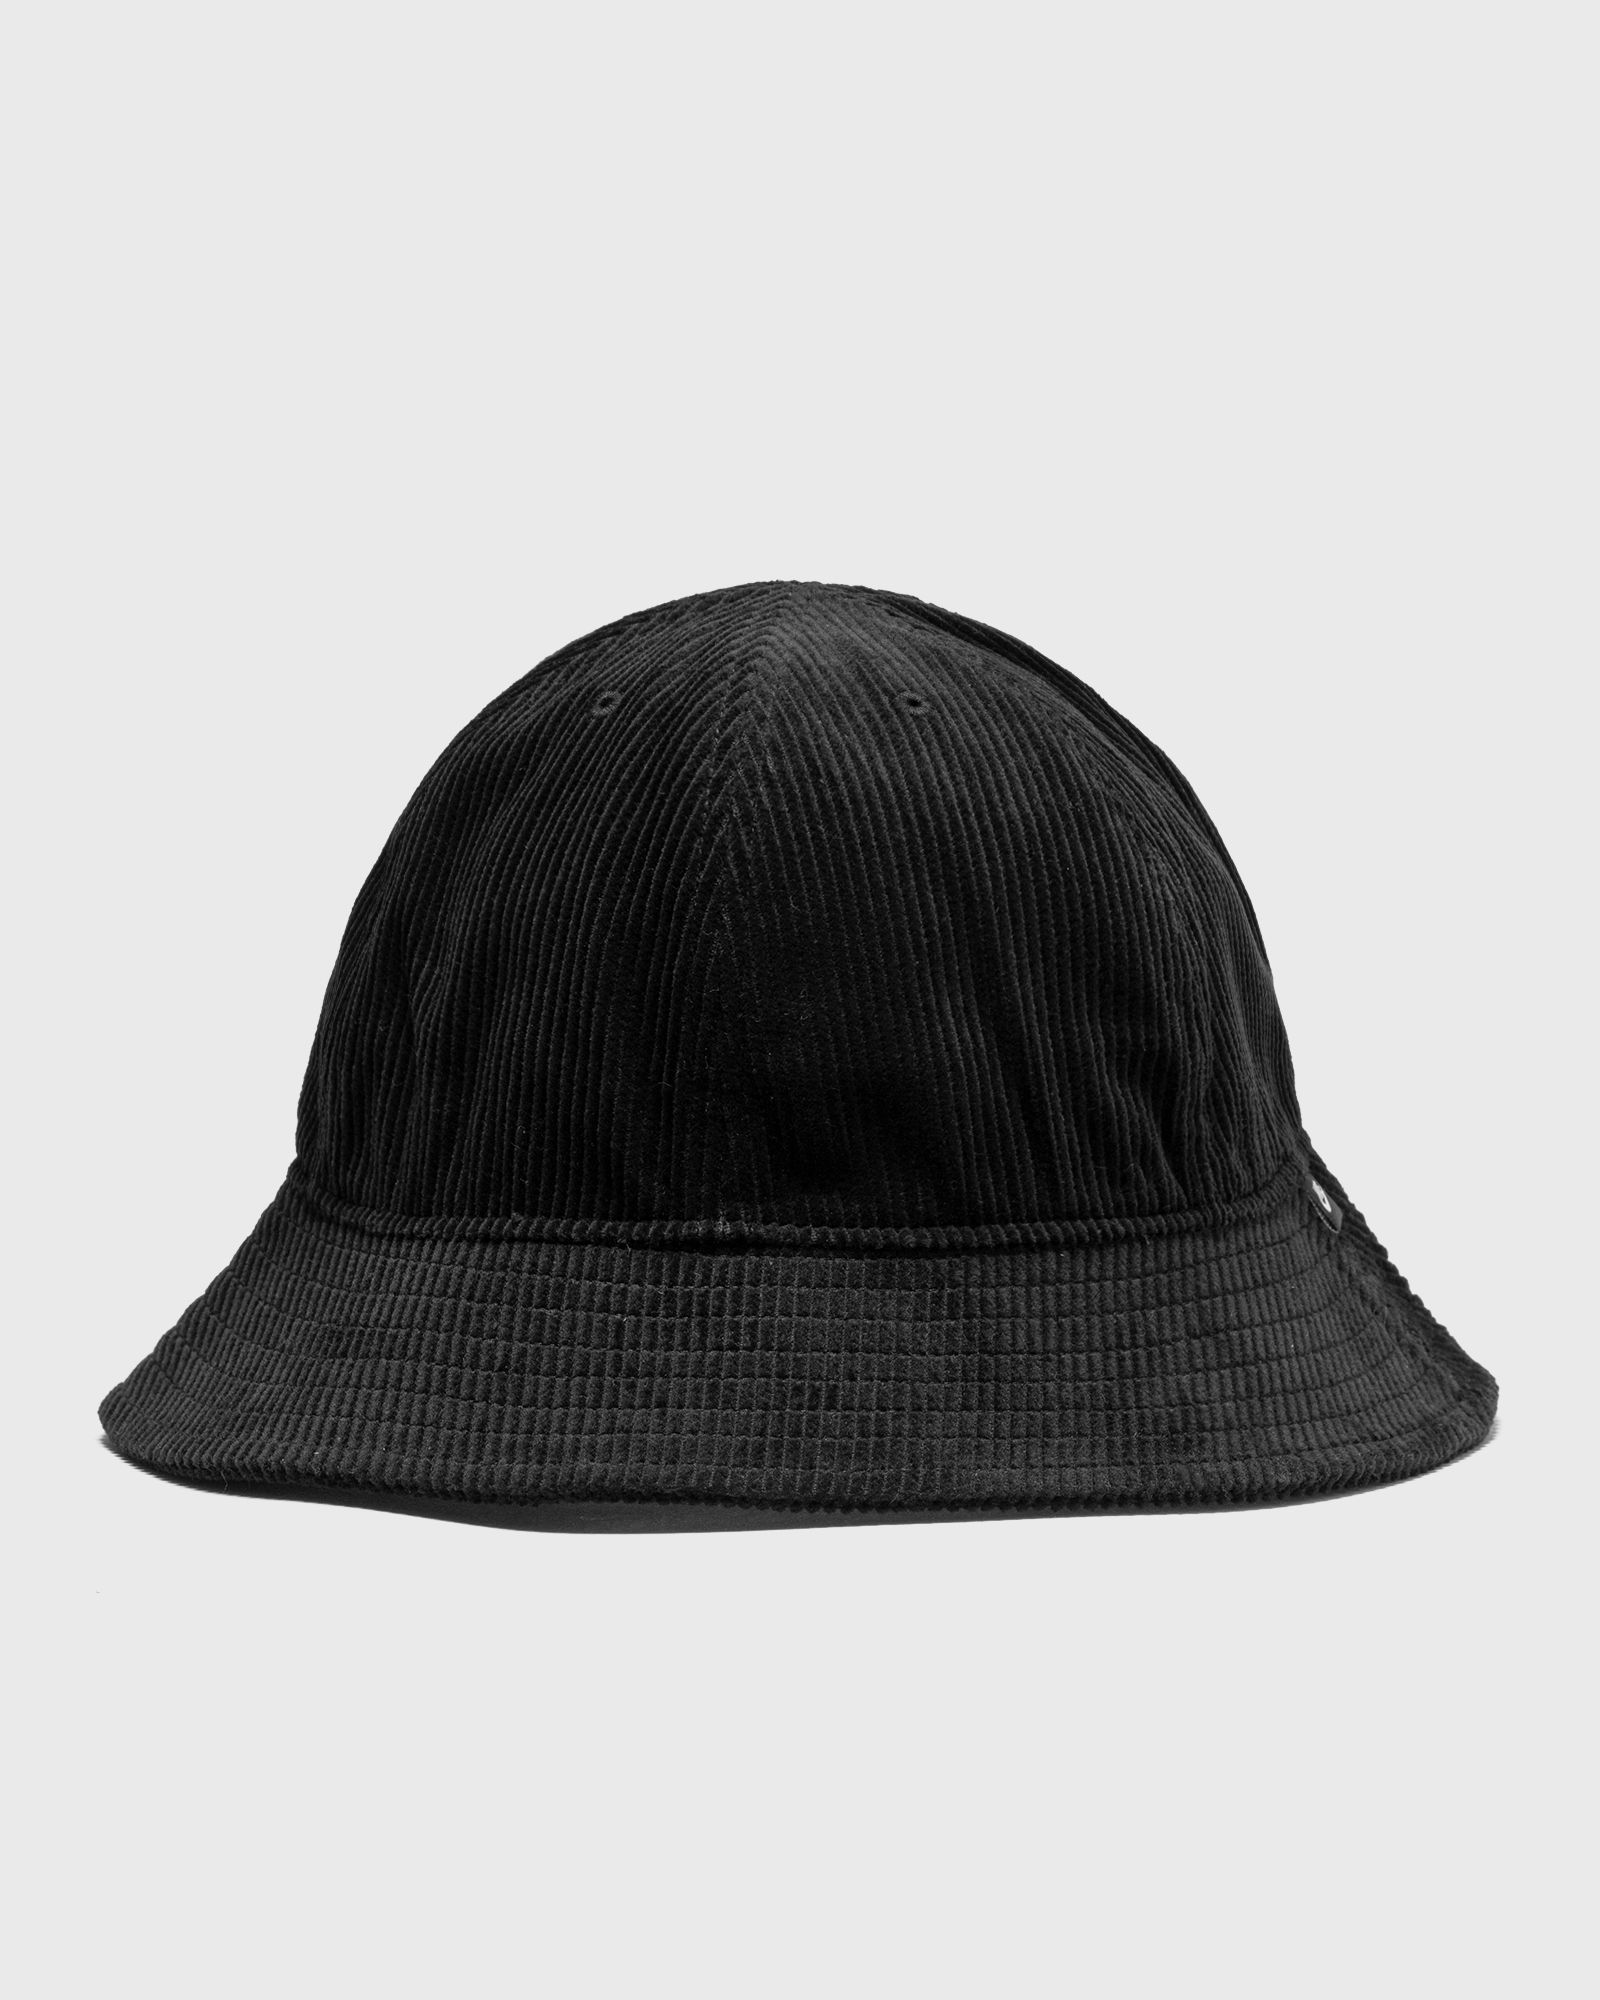 Nike - wmns bucket hat women hats black in größe:l/xl